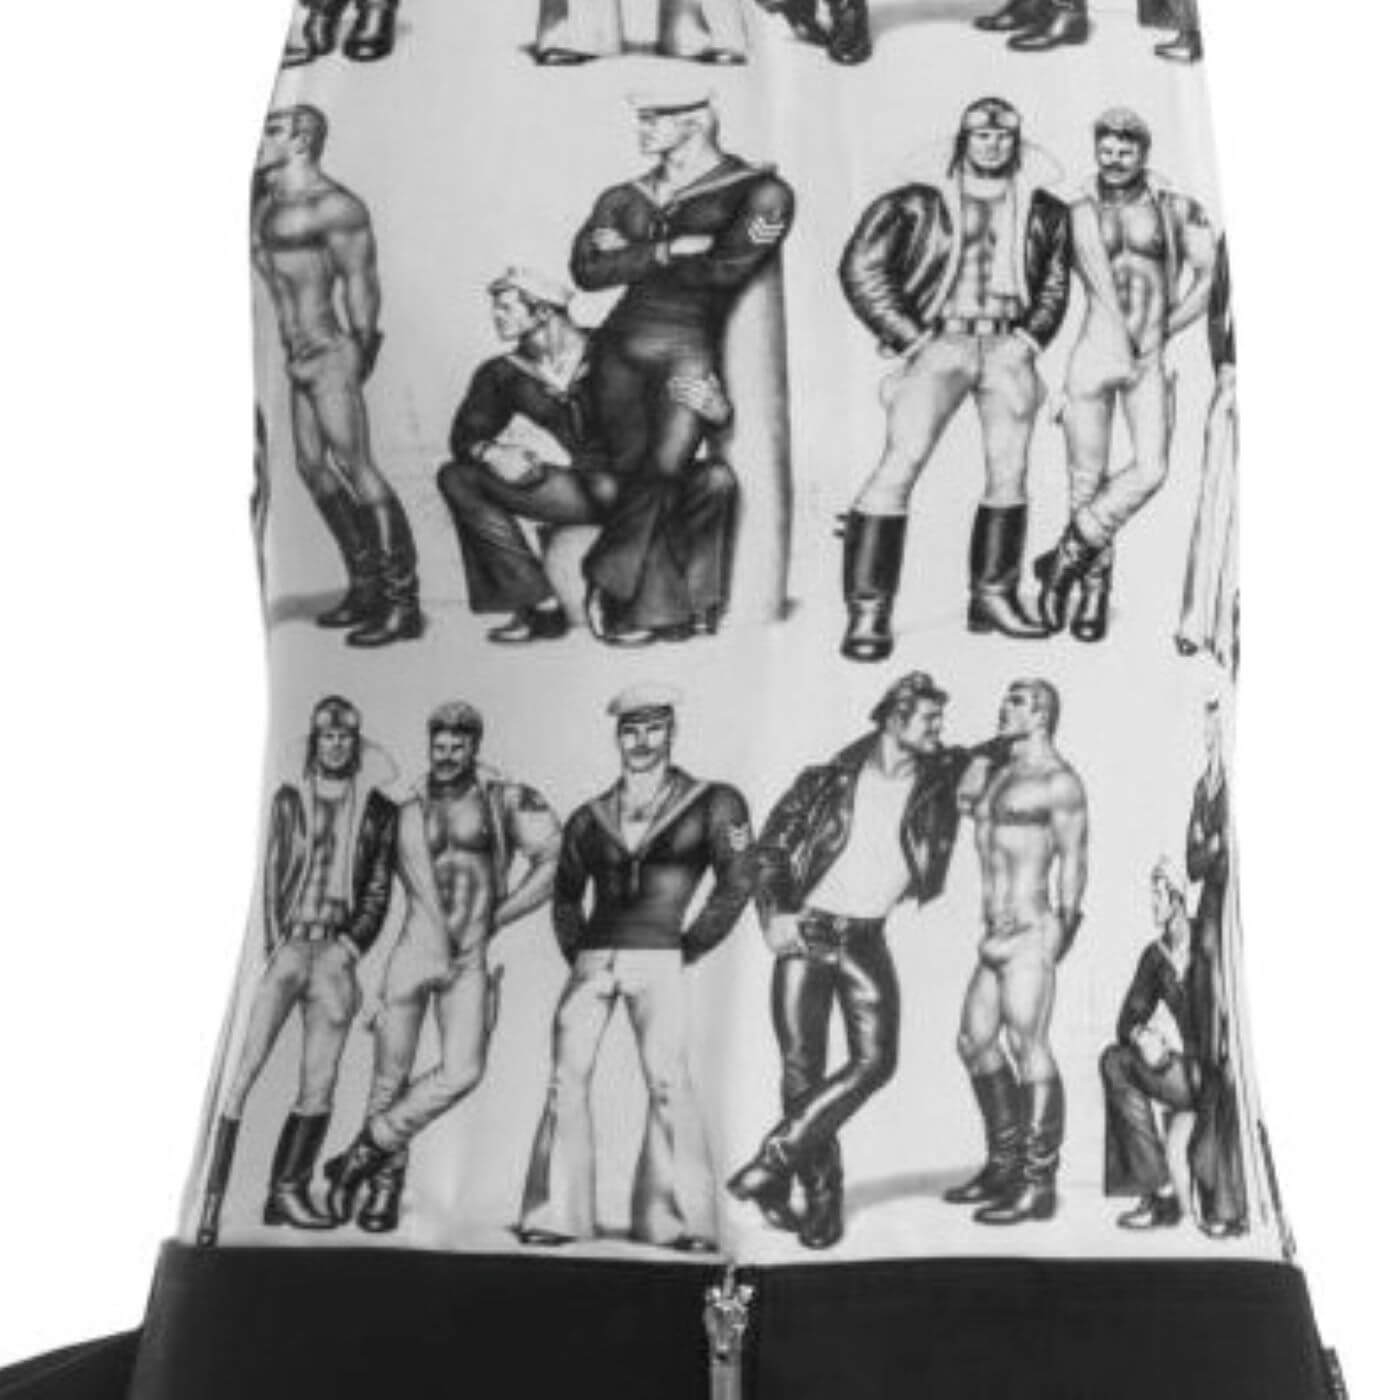 Nowoczesny fartuch do gotowania TOM OF FINLAND. Górny fragment bawełnianego fartucha kuchennego w rysowane wspaniale zbudowane i zadbane męskie postacie w kolorach szaro czarnych na białym tle. Nowoczesny design